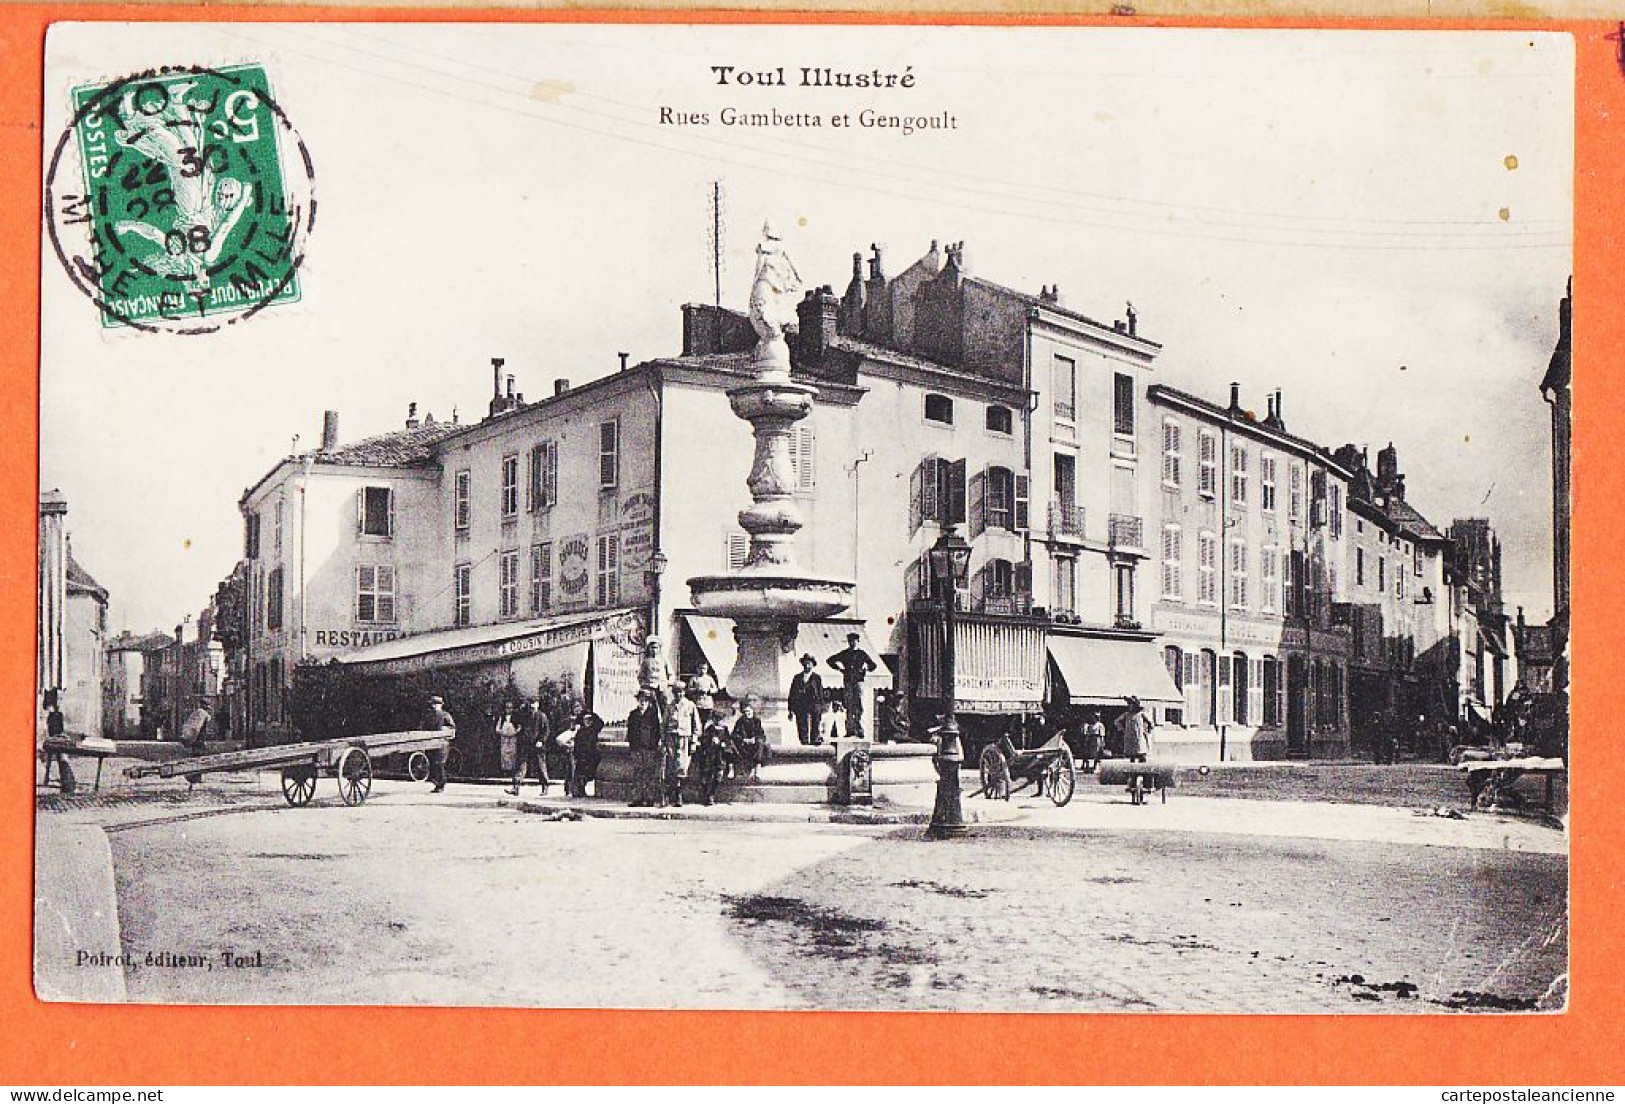 30965 / TOUL (54) Rue GAMBETTA Et GENGOULT Fontaine CUREL 1908 à COMBES 89 Asile Convalscents Saint-Maurice Edit POIROT - Toul